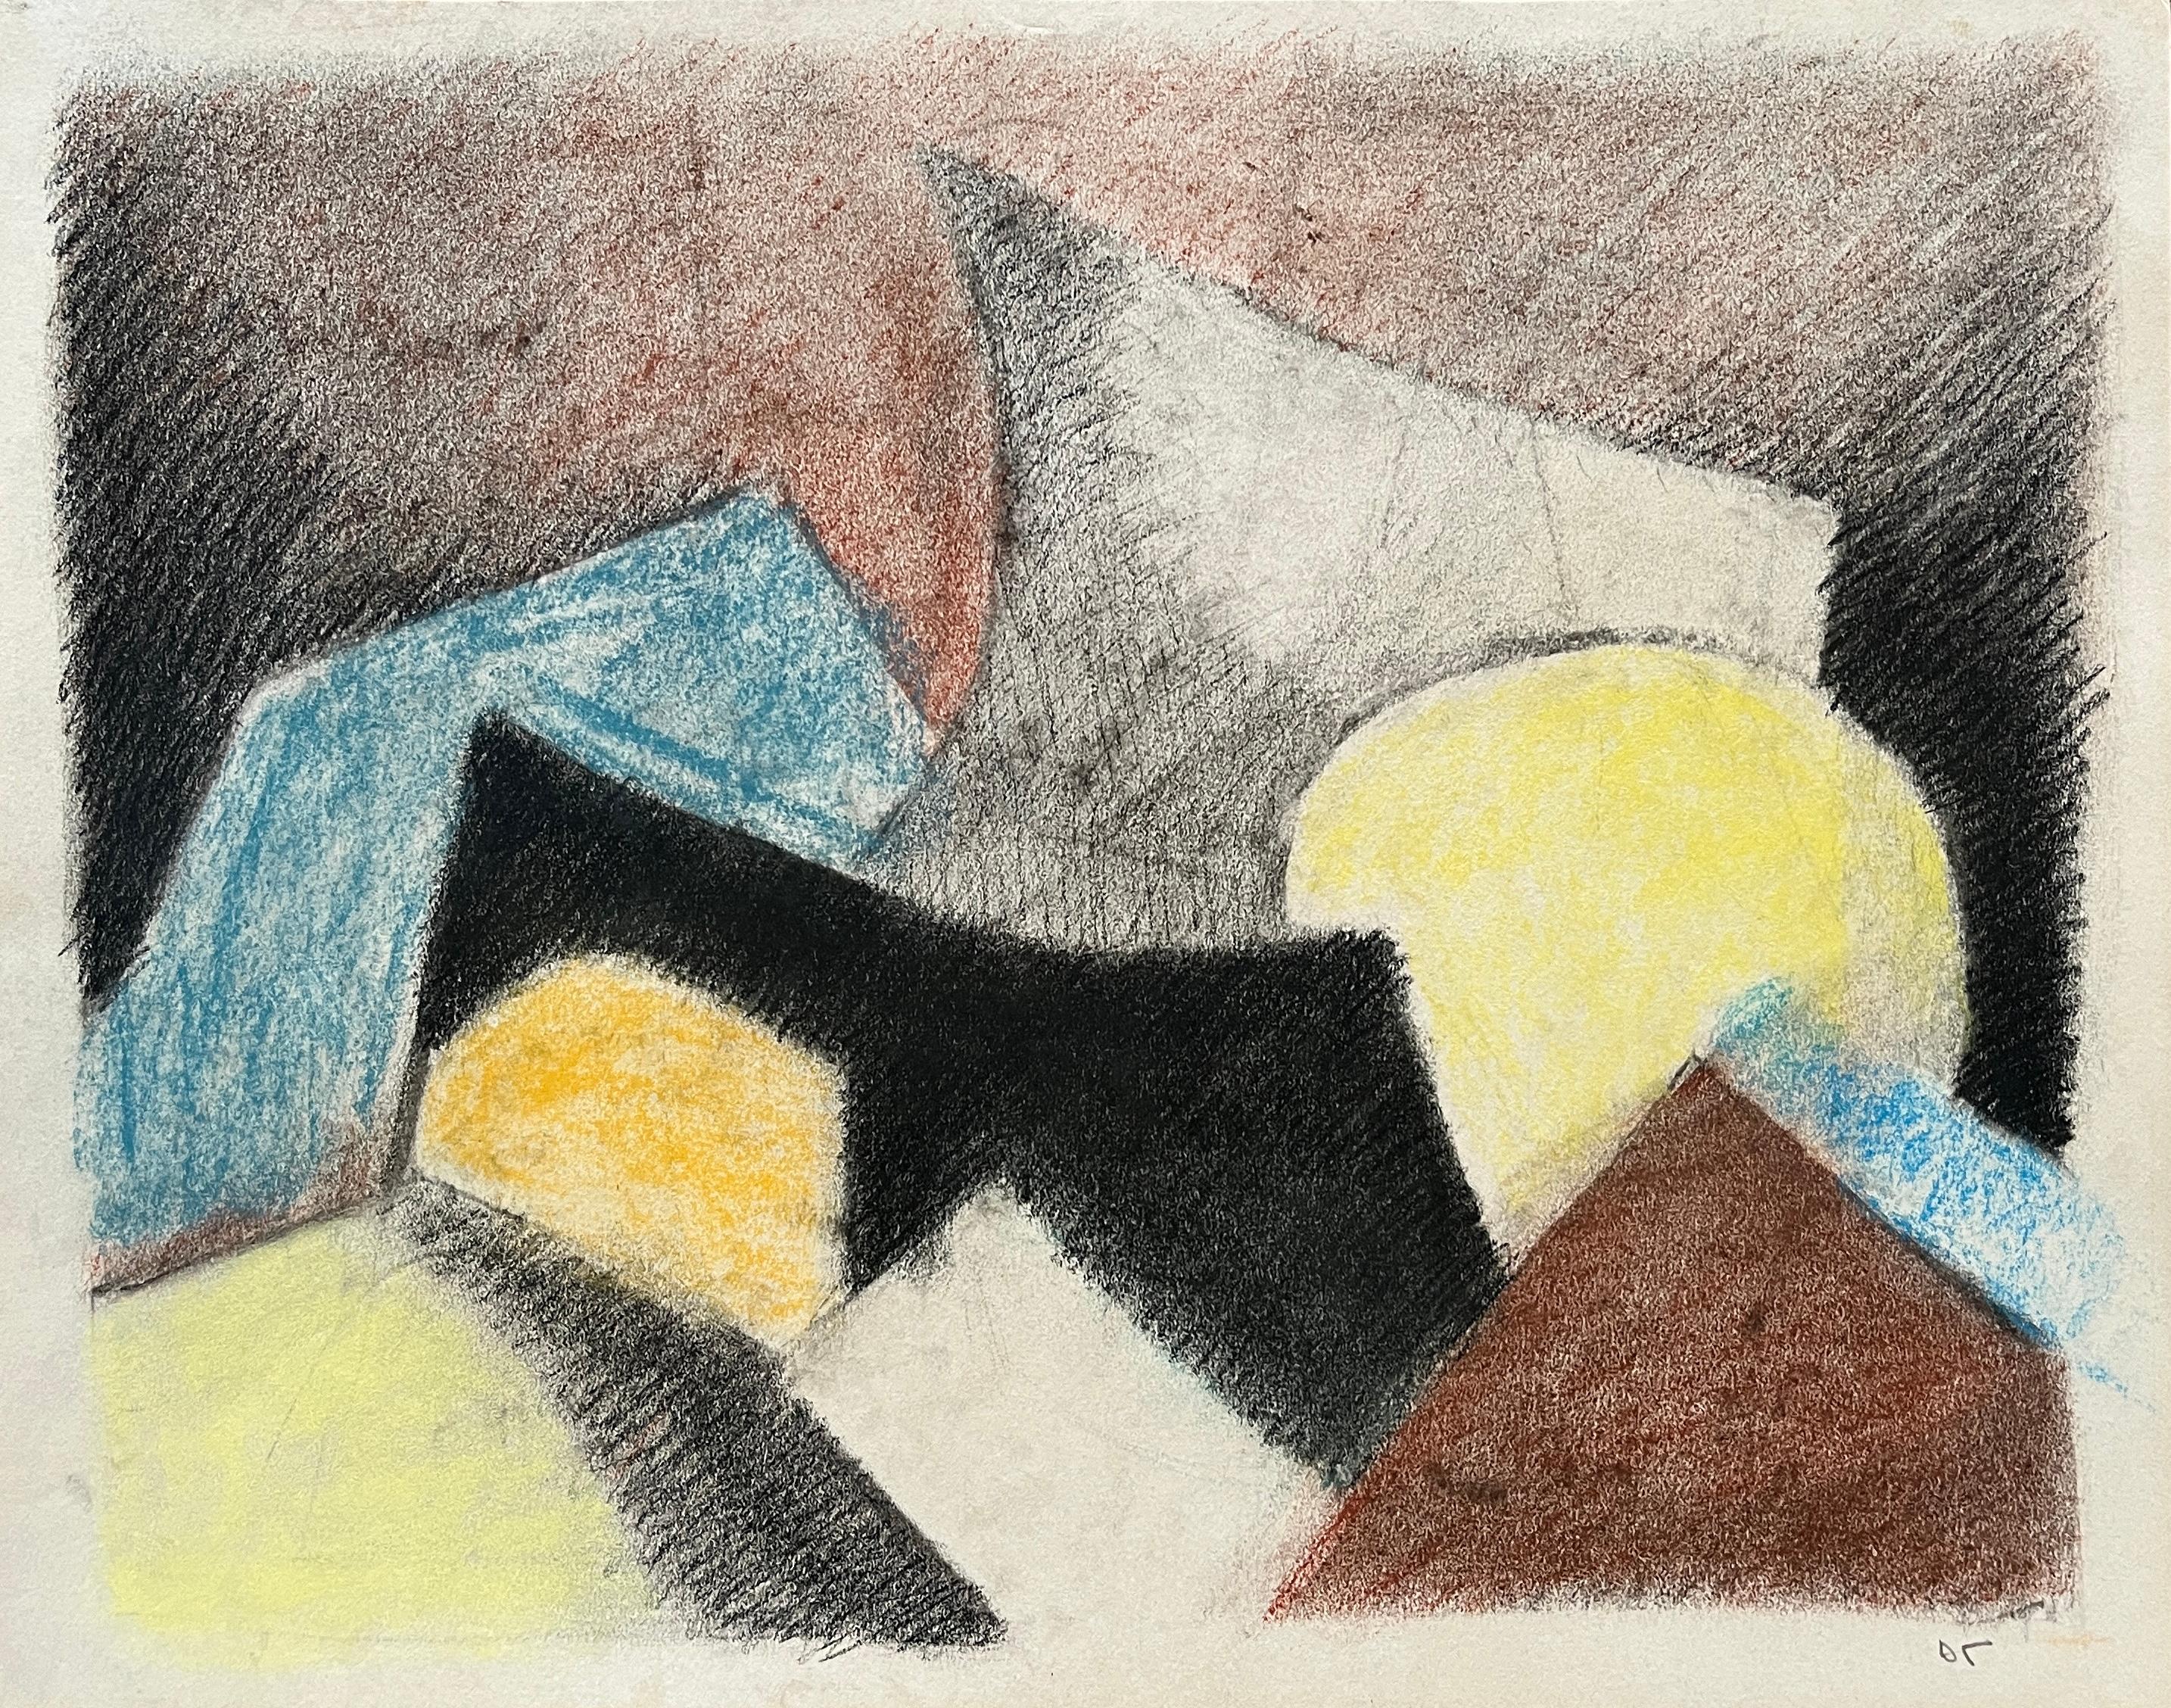 1980's Cubist "Gelb, Blau, Schwarz" Soft Pastell abstrakte Zeichnung – Mixed Media Art von D. Tongen